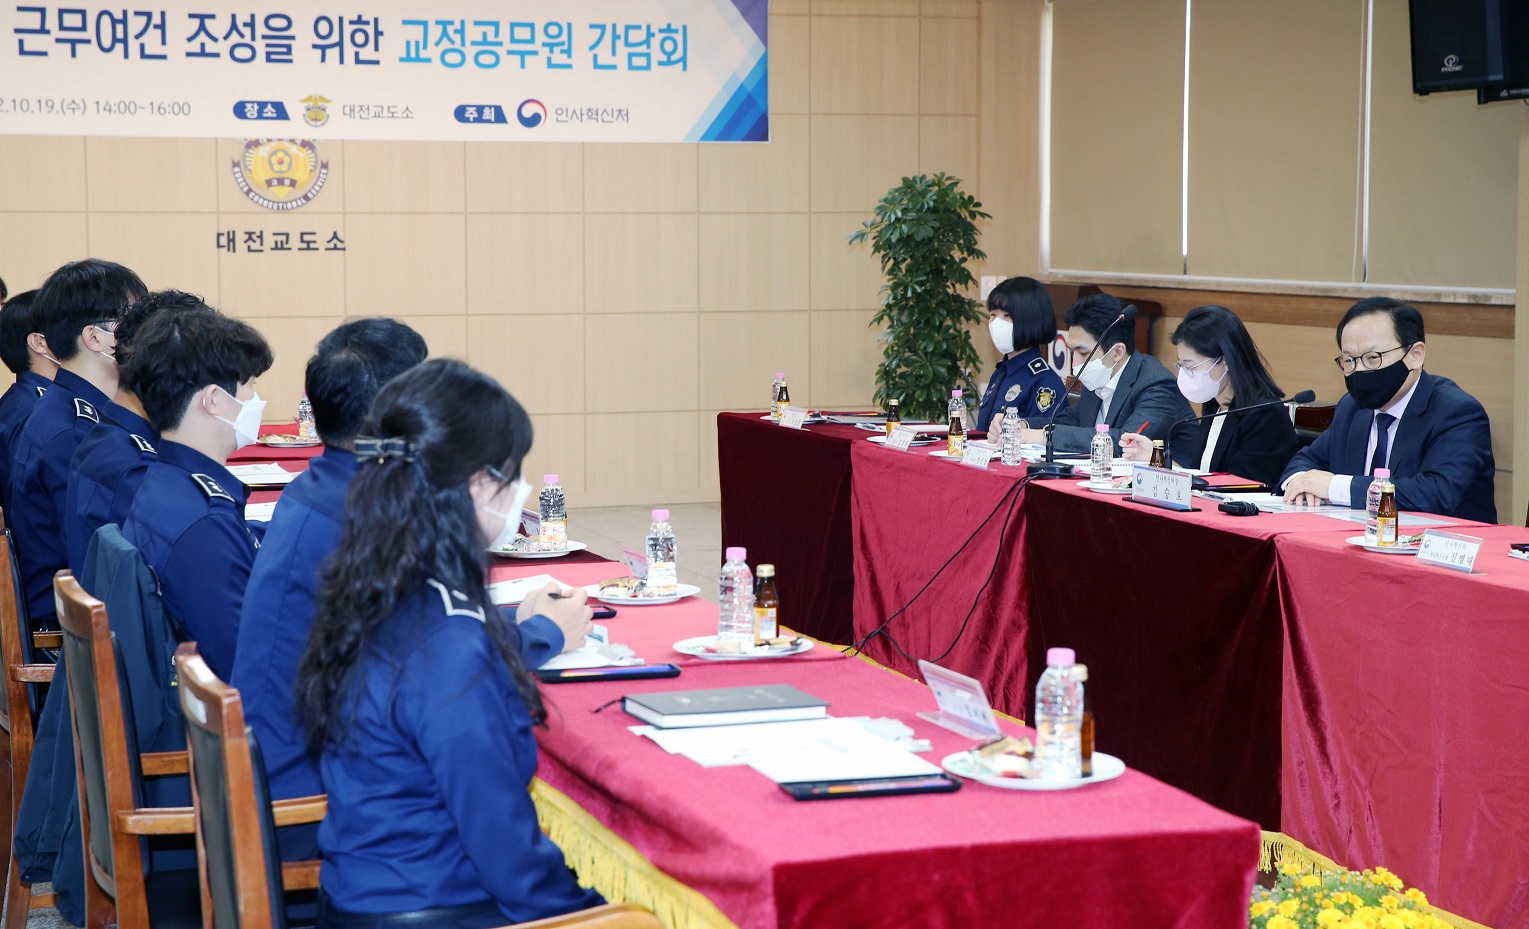 김승호 인사혁신처장이 10월 19일 대전교도소에서 열린 '활력있는 근무여건 조성을 위한 교정공무원 간담회'에 참석해 의견을 교환하는 모습